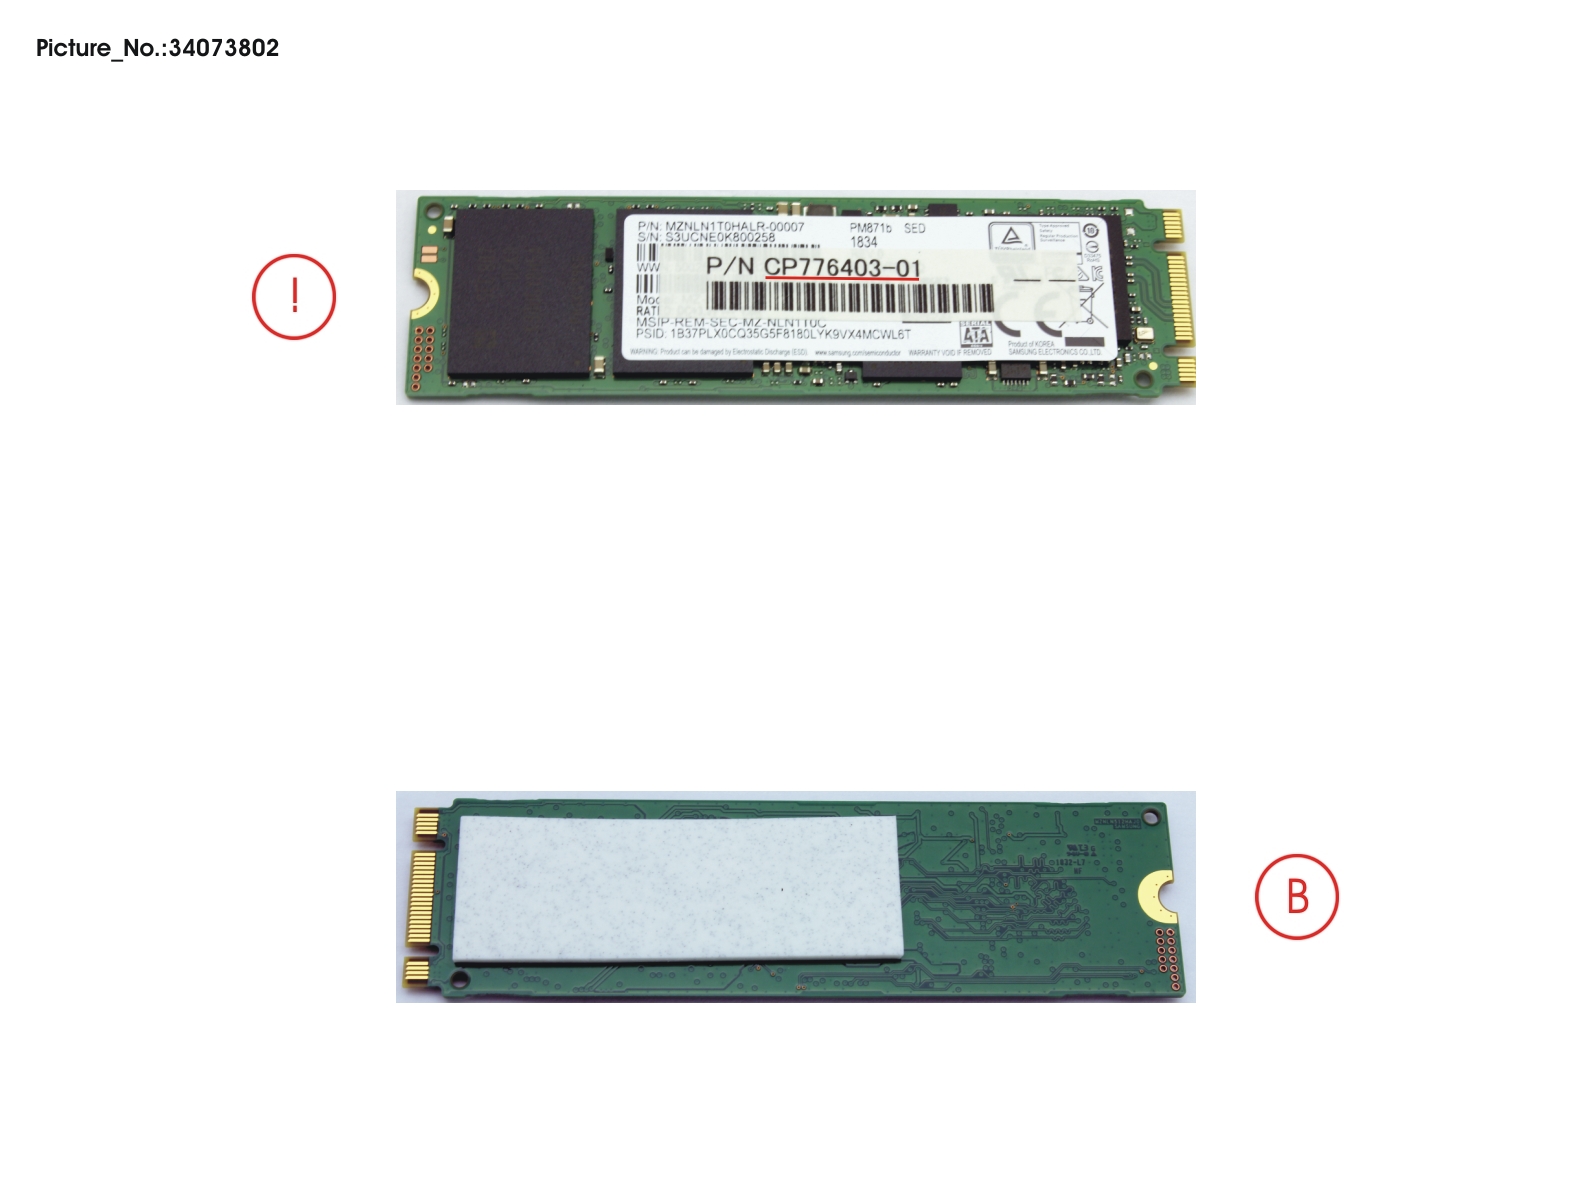 SSD S3 M.2 2280 1TB (OPAL) W/RUBBER